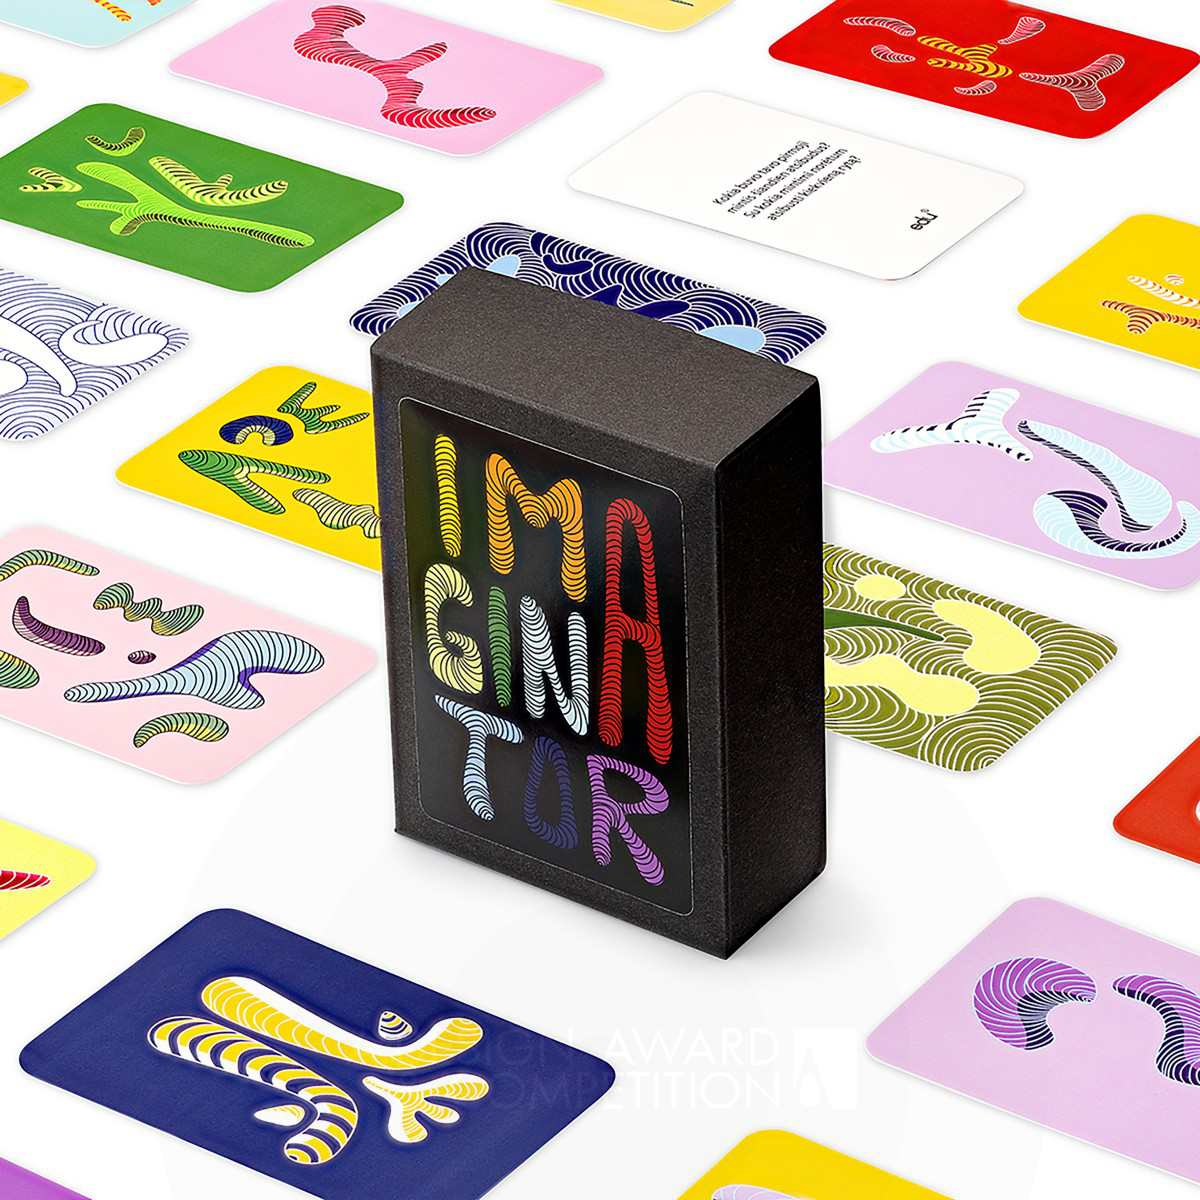 Imaginator : Des cartes de jeu pour stimuler l'imagination et la croissance